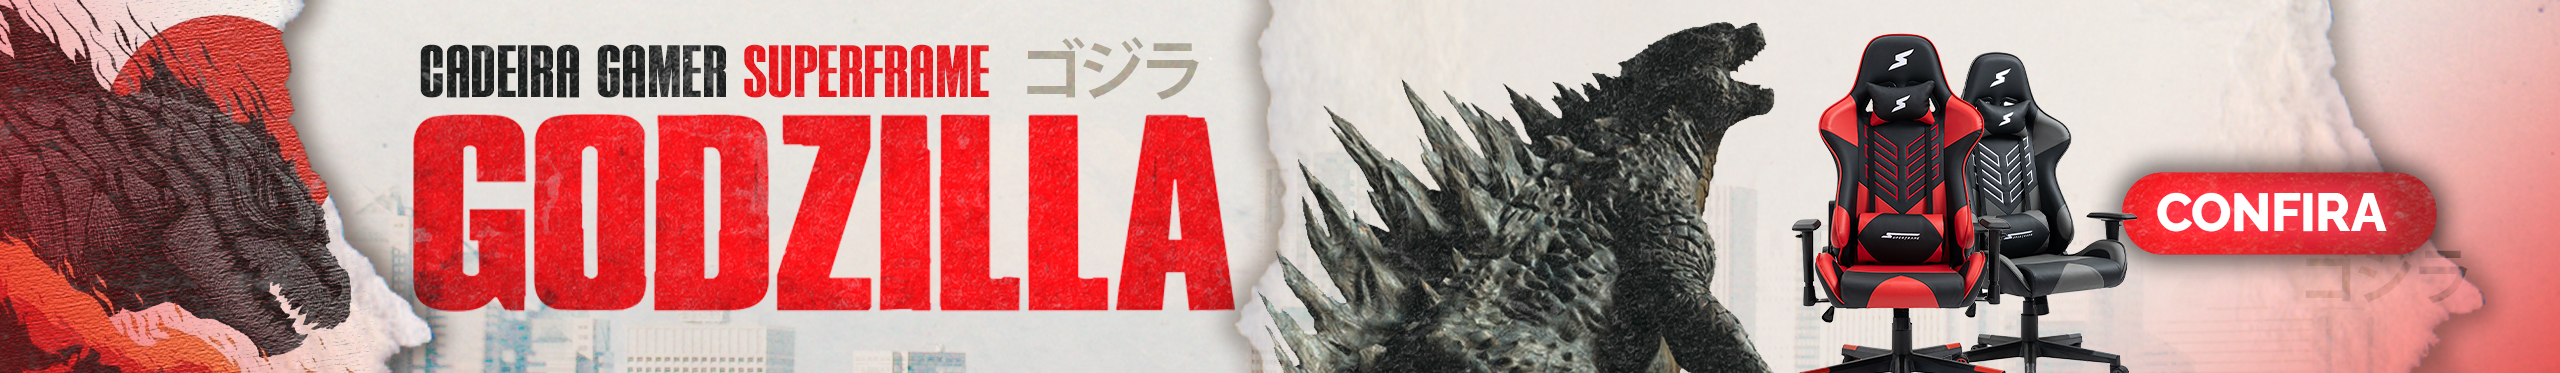 Cadeiras Gamer Godzilla | Qualidade monstruosa para sua gameplay. Clica!